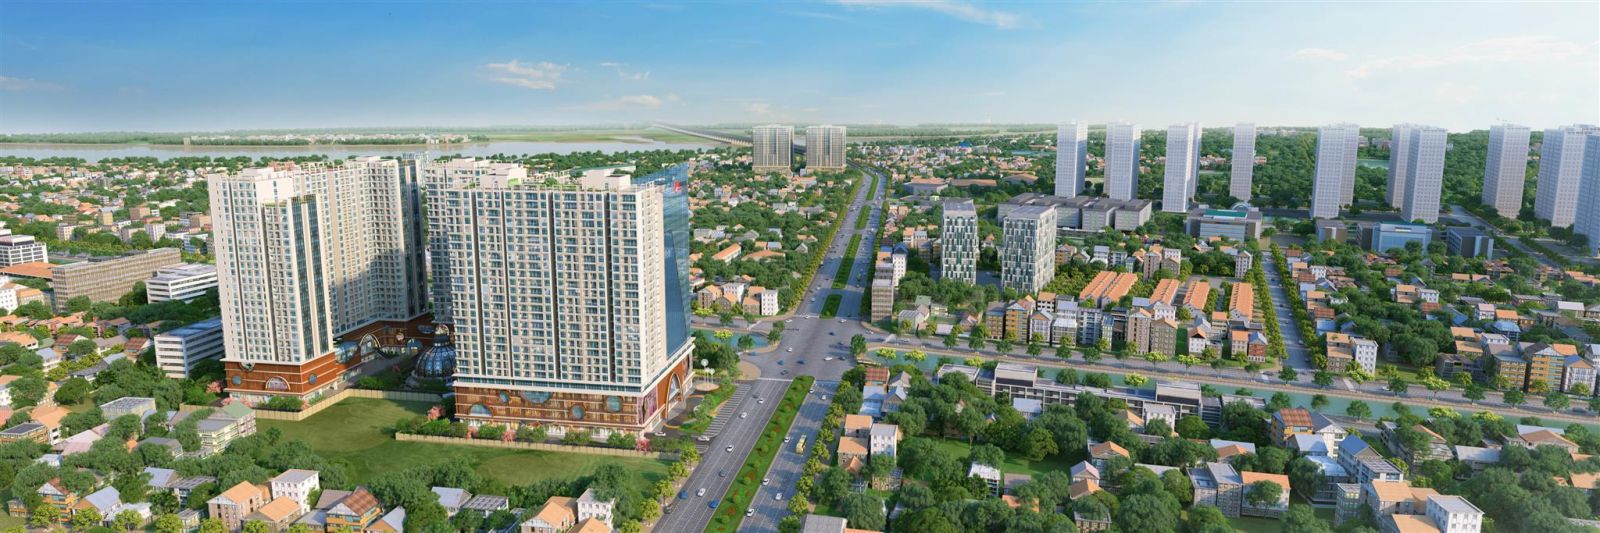 Hinode City và Times City là những dự án được khách hàng các tỉnh lân cận phía Nam Hà Nội quan tâm.